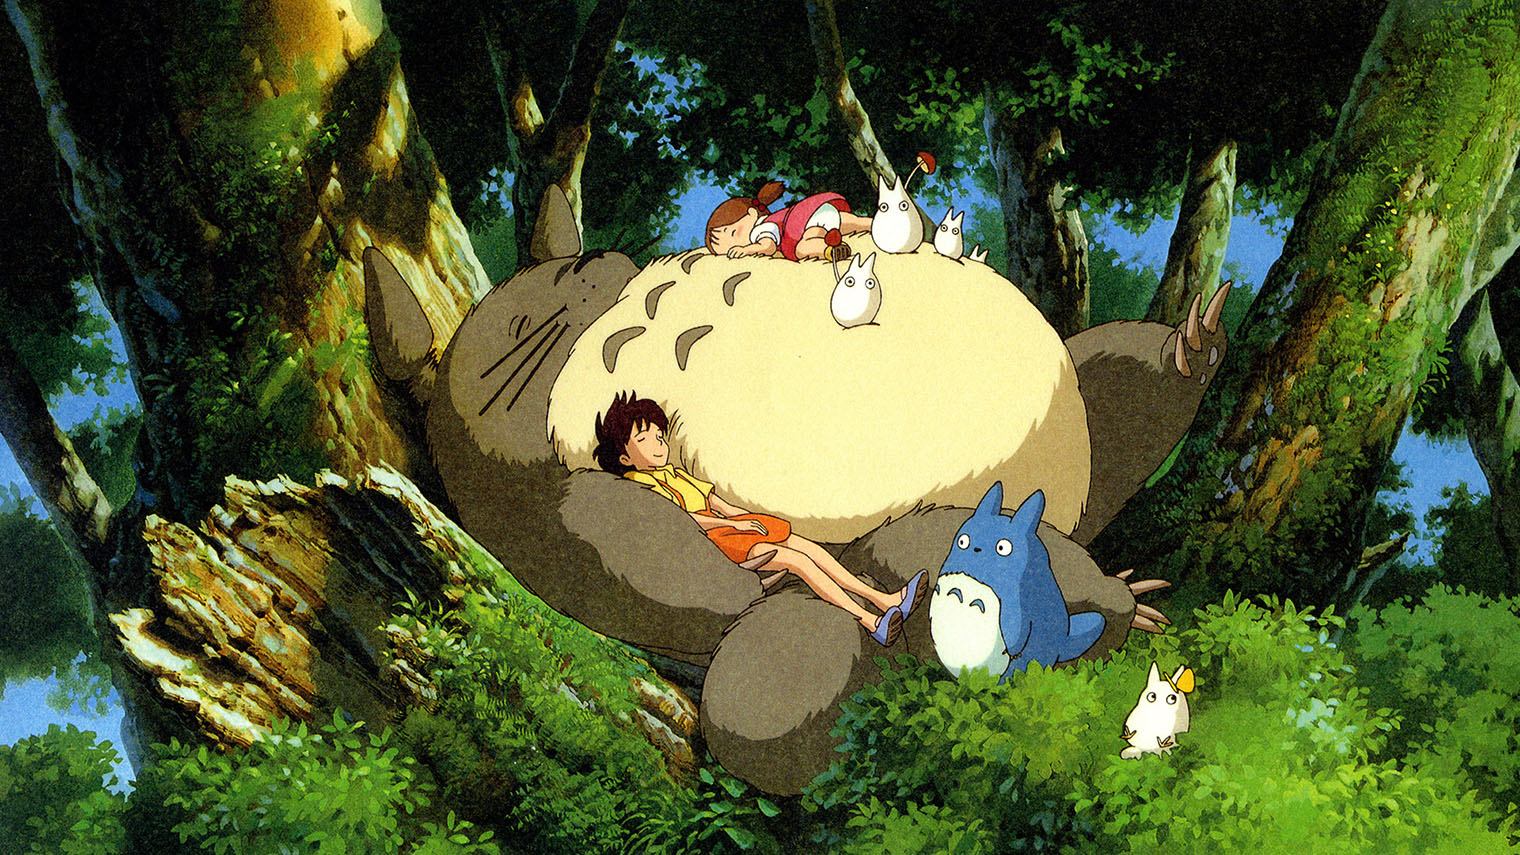 Пушистый гигант Тоторо был настолько популярен у зрителей, что стал маскотом студии Ghibli и попал в ее логотип. Кадр: Studio Ghibli